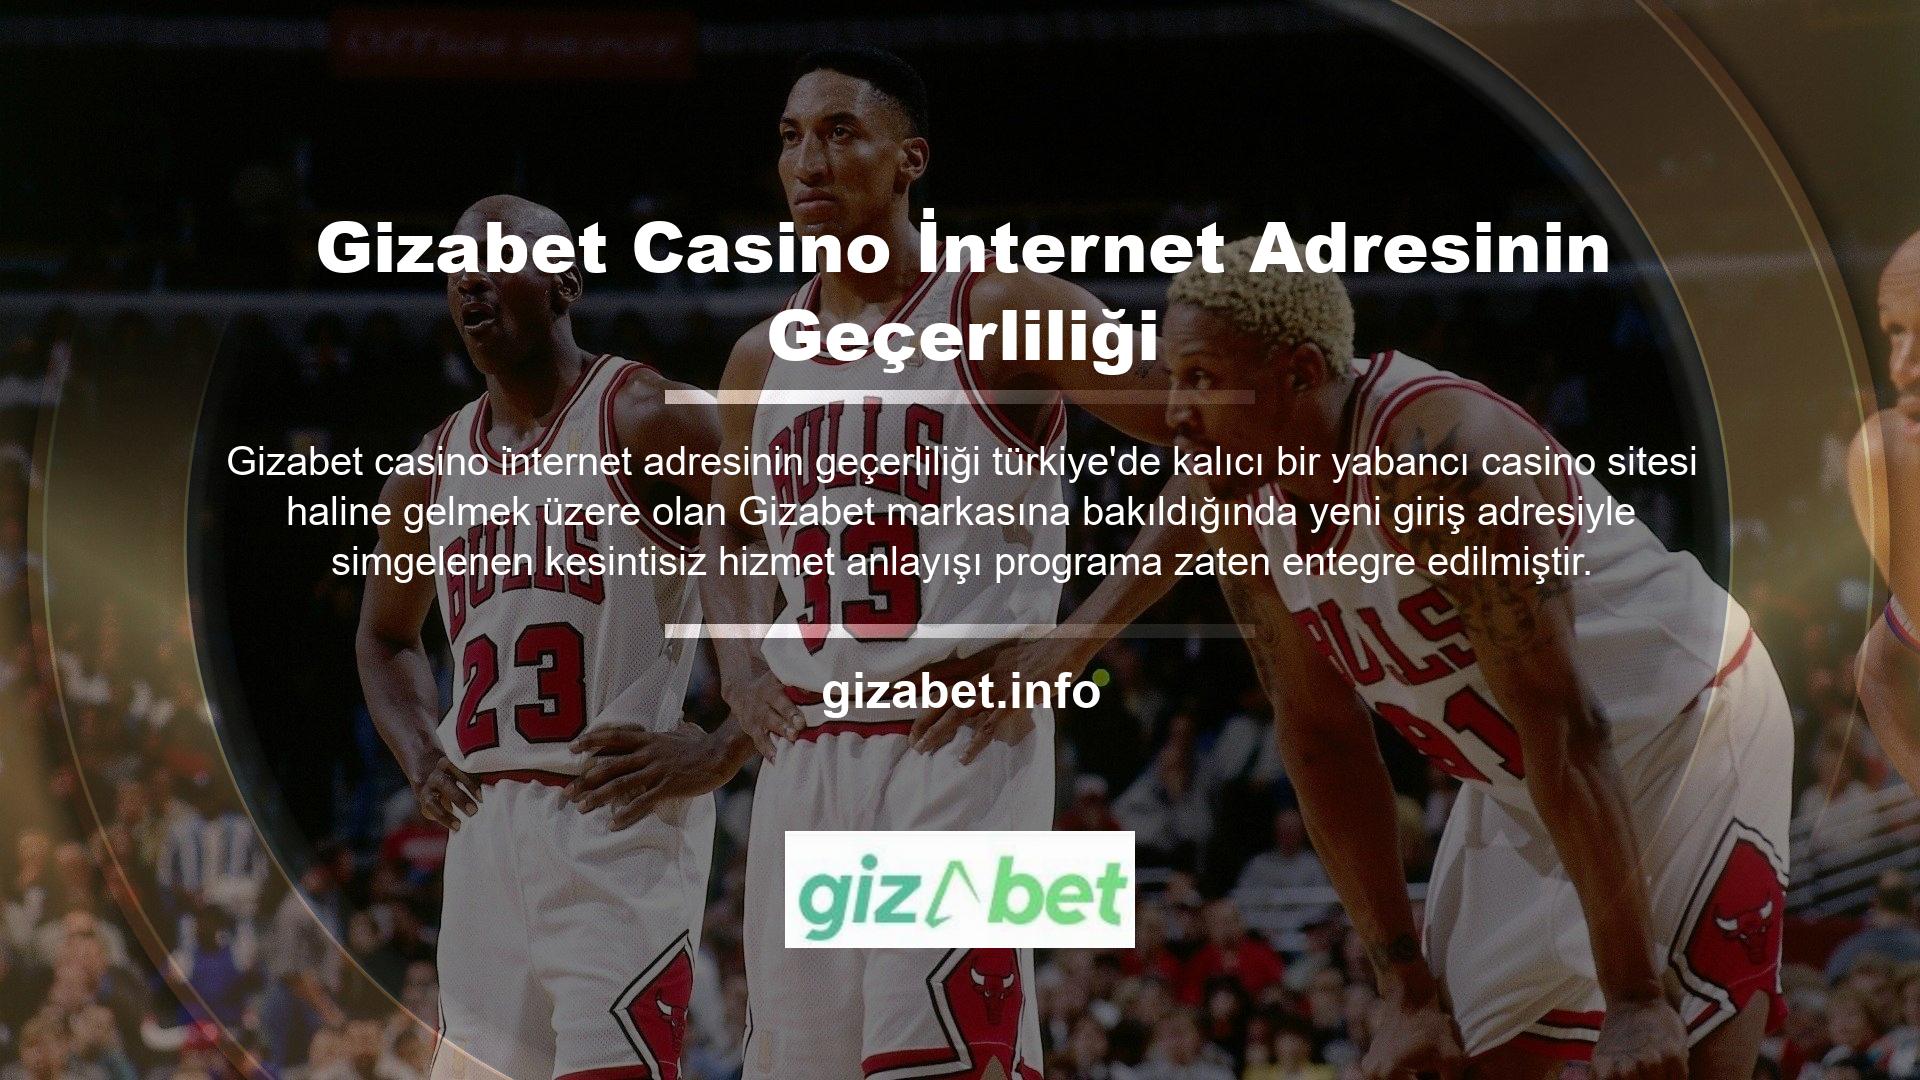 bunu görebiliyorum Yeni kayıtlı adres, Gizabet Casino internet adresi geçerliliği web sitesinin Türkiye pazarındaki tüm yabancı bahisçiler için vazgeçilmez olduğunu göstermektedir